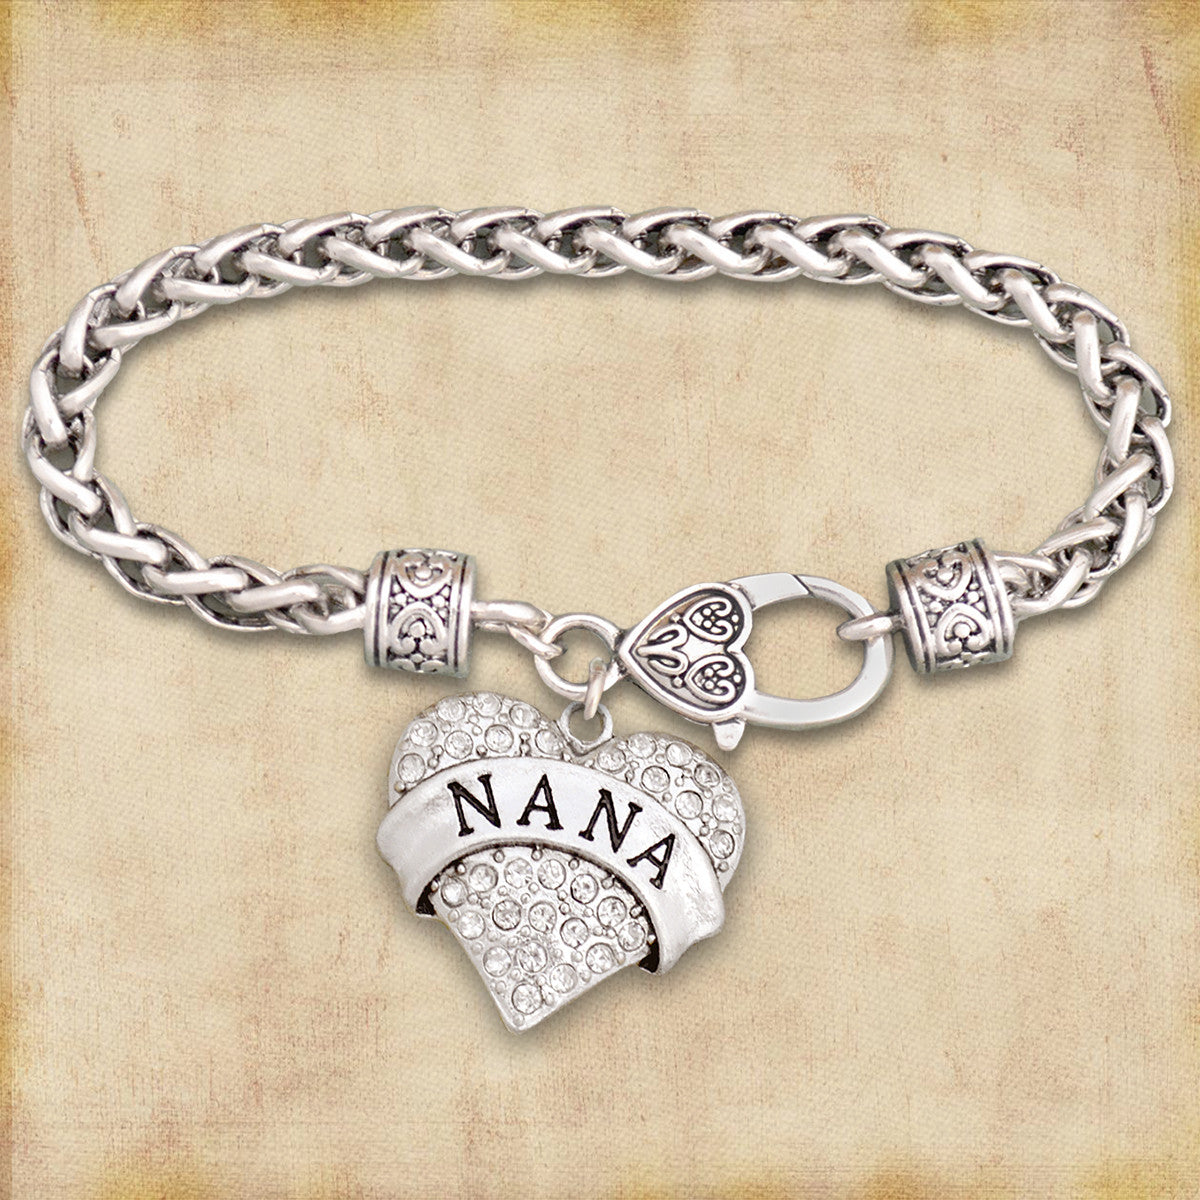 Nana Heart Clasp Bracelet